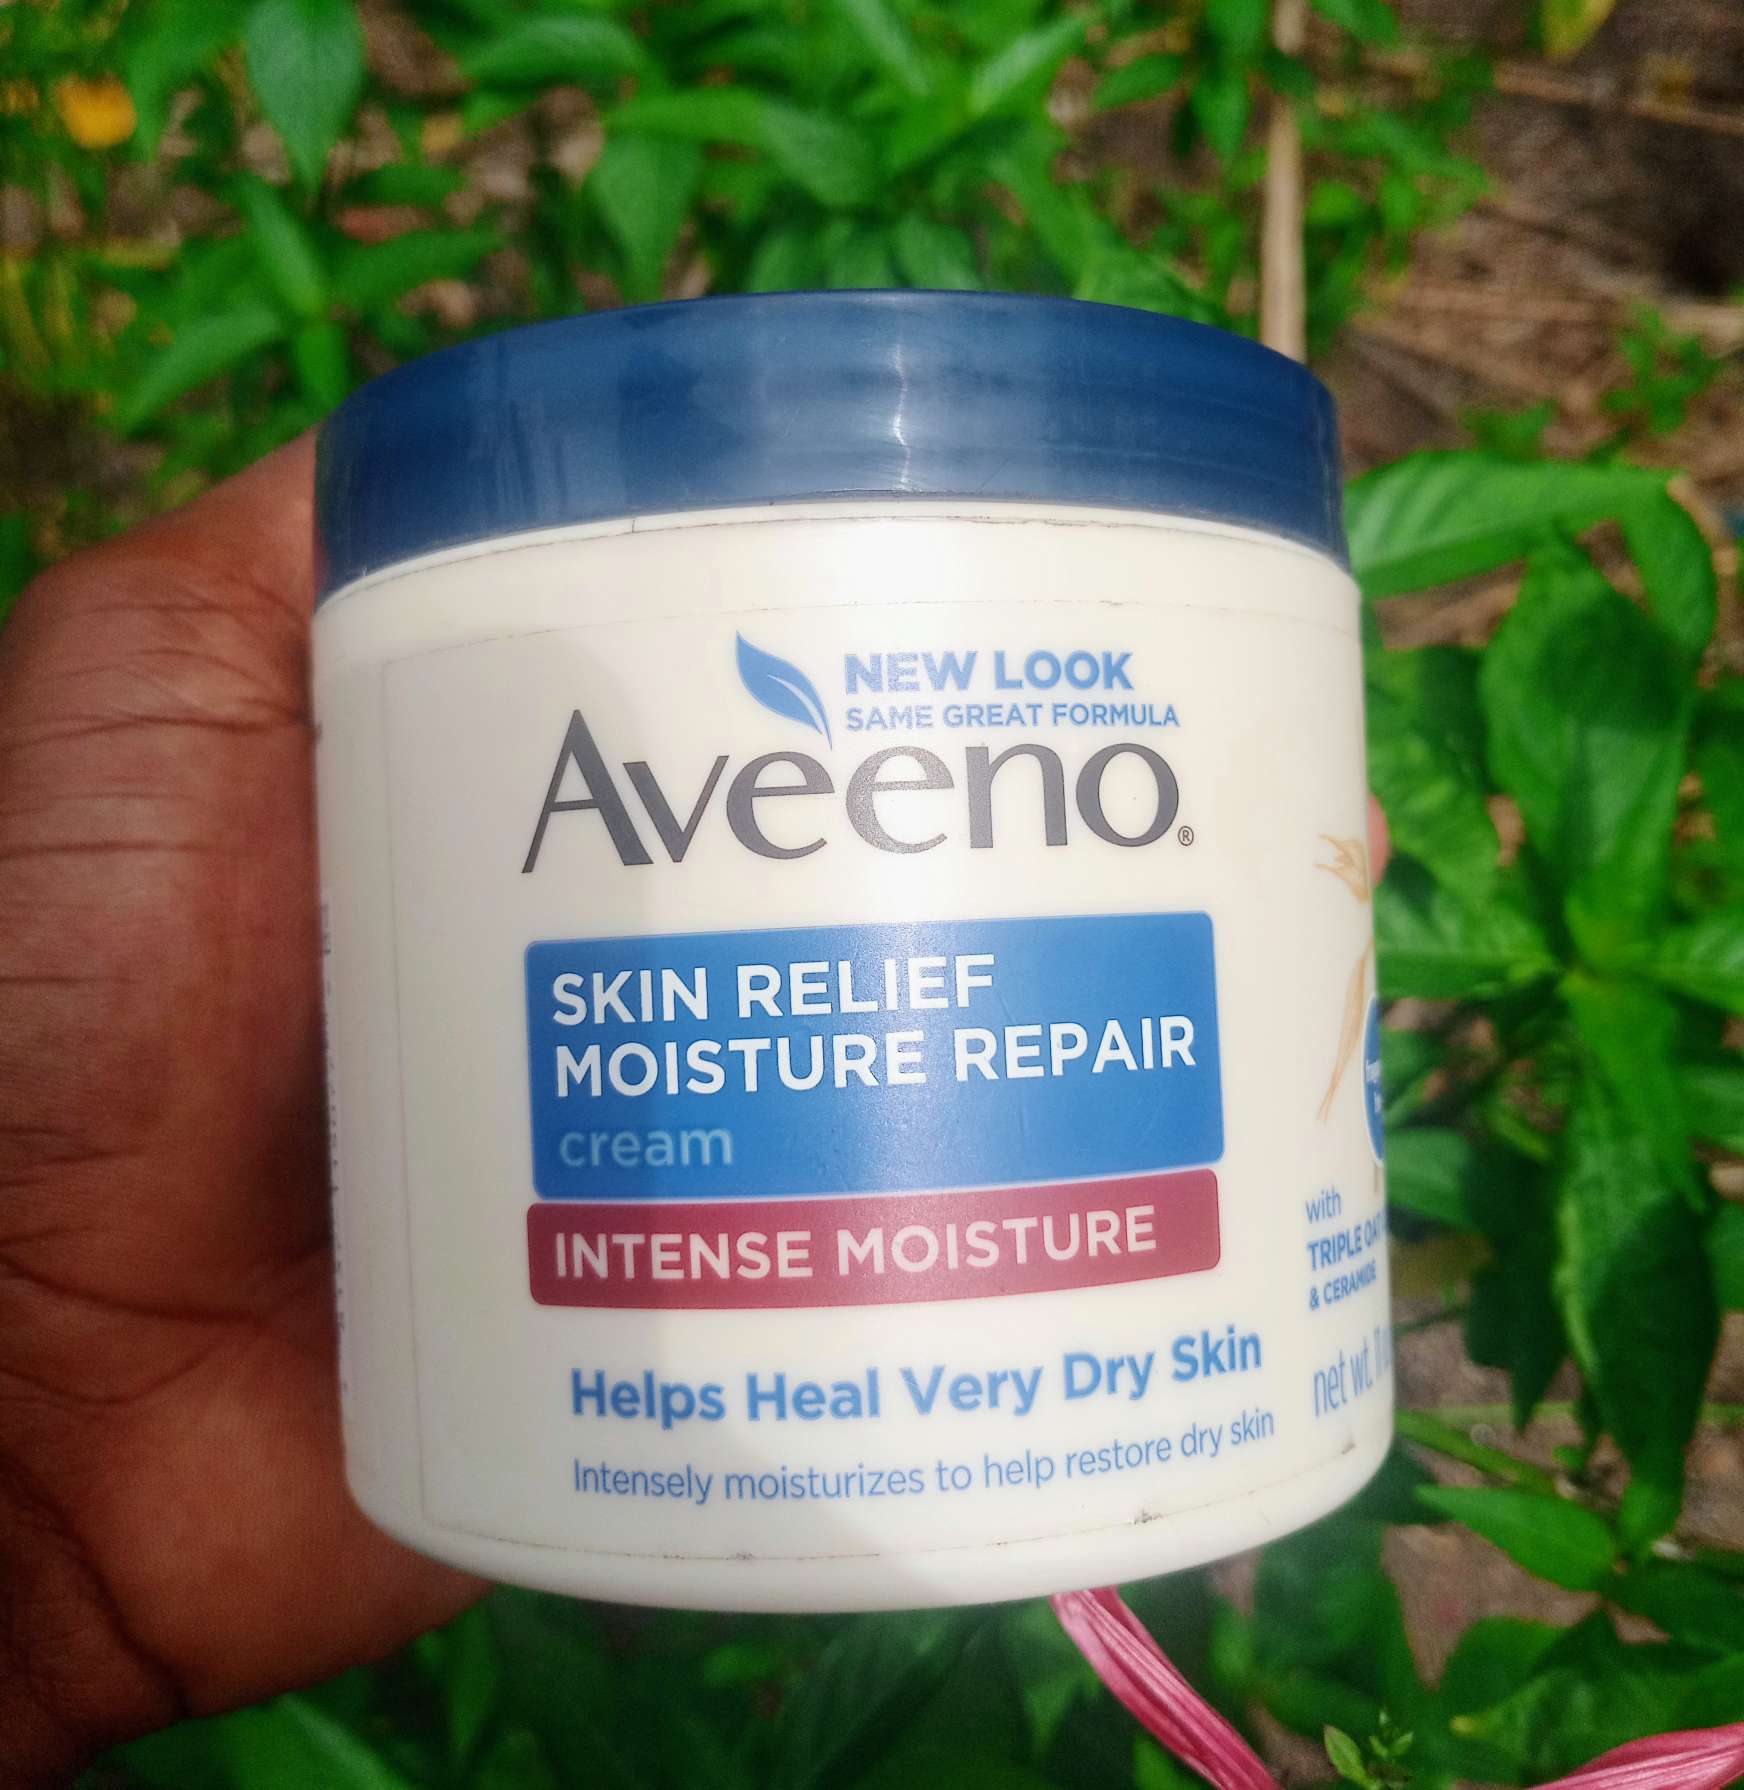 Aveeno Skin Relief Moisture Repair Cream review 